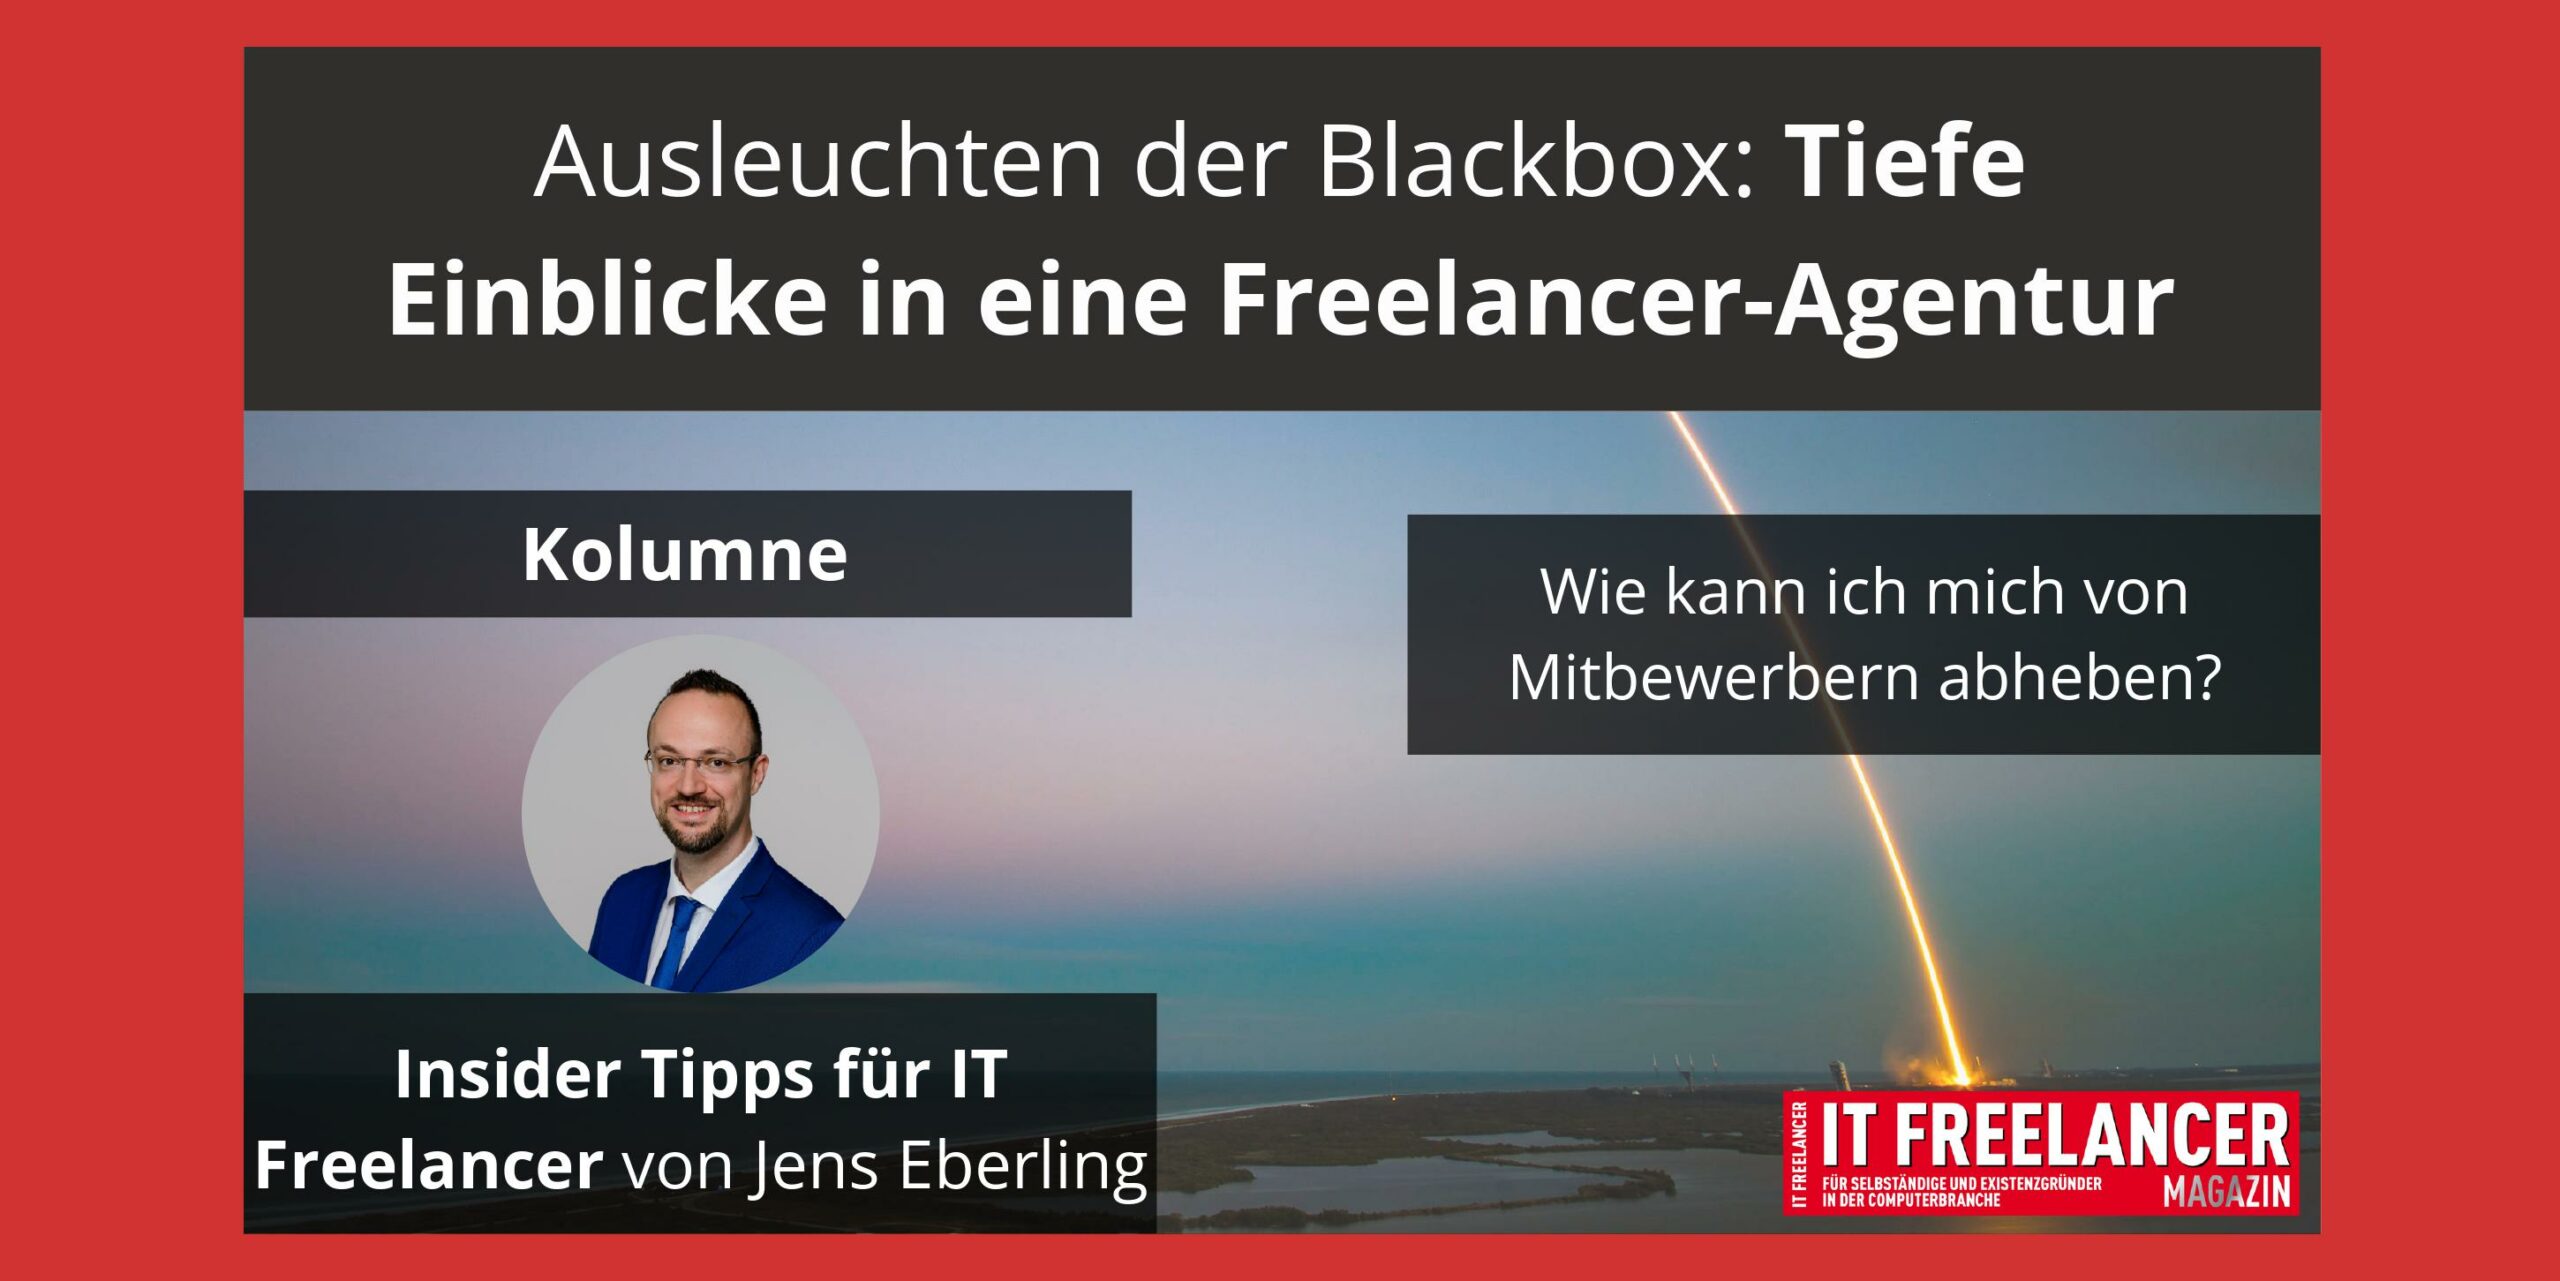 Ausleuchten der Blackbox_Tiefe Einblicke in eine IT Freelancer-Agentur